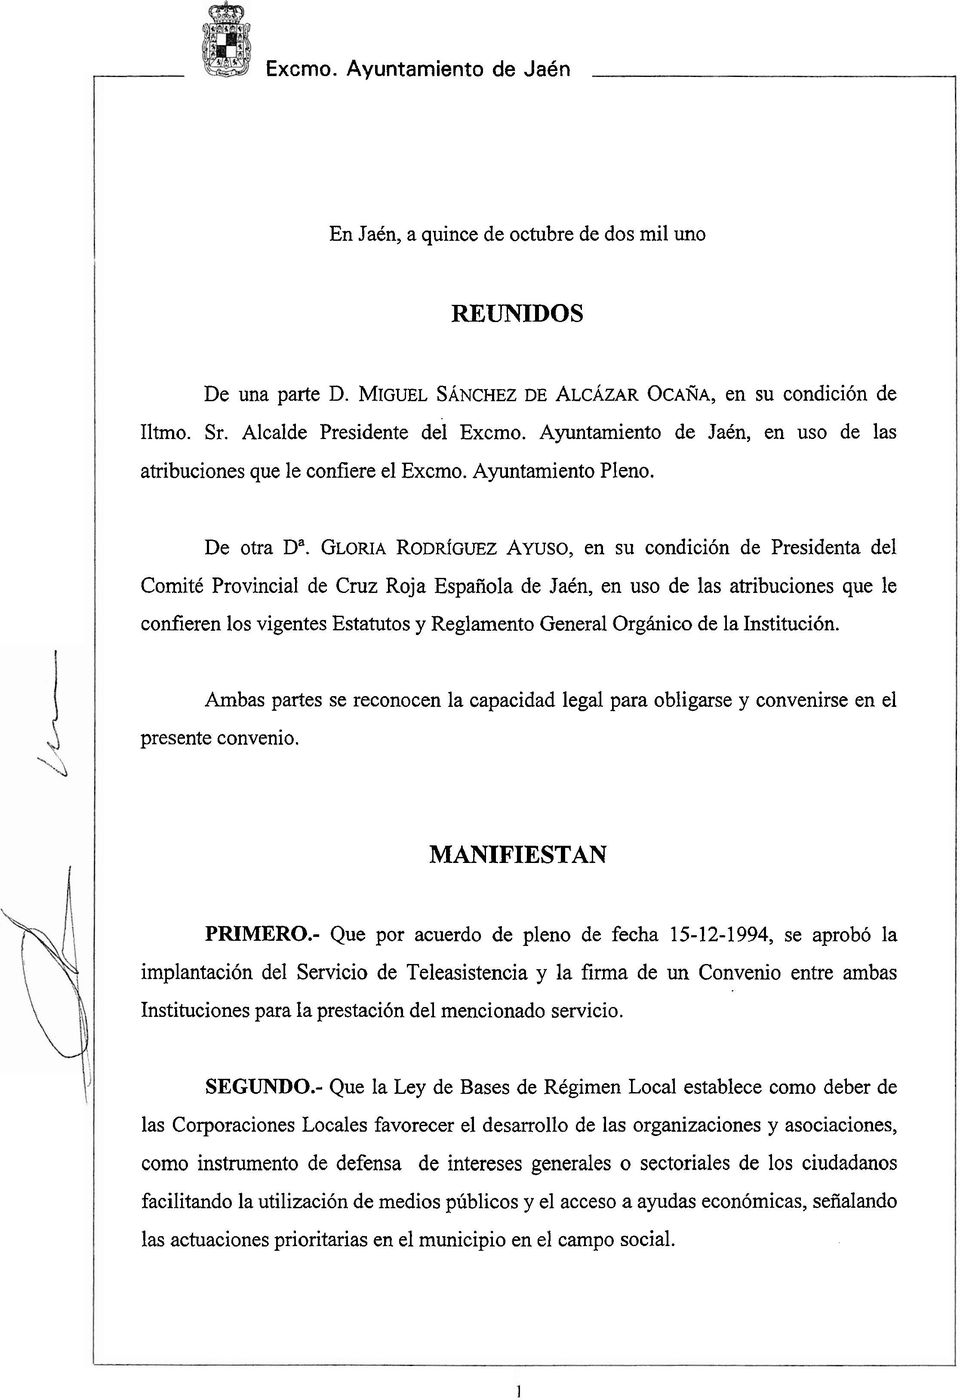 GLORIA RODRÍGUEZ AYUSO, en su condición de Presidenta del Comité Provincial de Cruz Roja Española de Jaén, en uso de las atribuciones que le confieren los vigentes Estatutos y Reglamento General